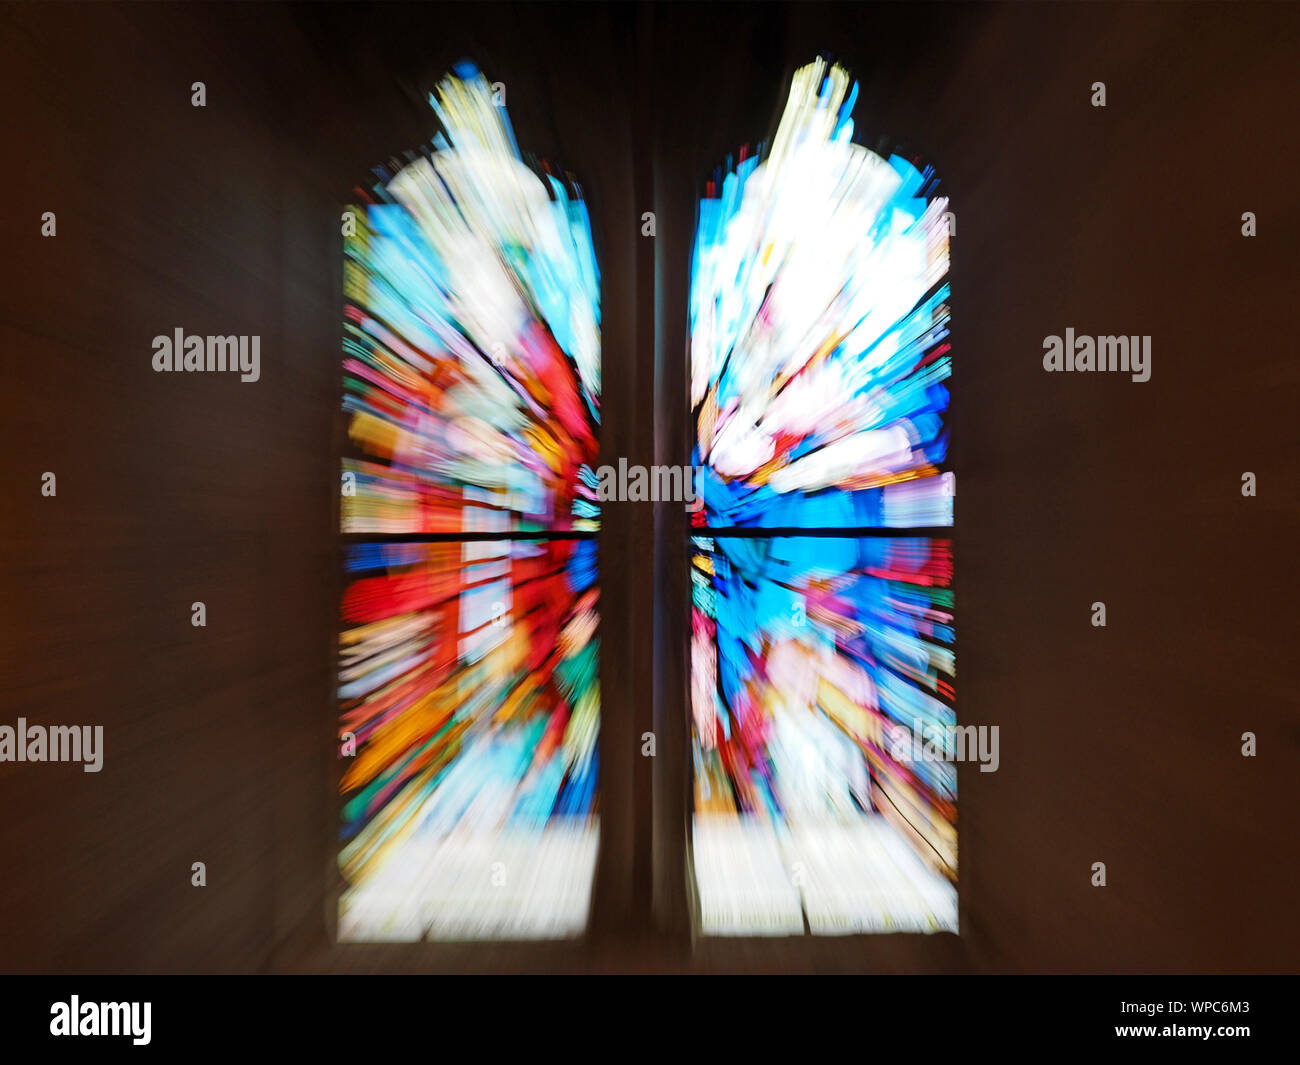 Kaleidoskop Effekt von bunten gezoomte Darstellung von rot-Blau- und Grüntöne der Buntglasfenster in der All Saints Church in Orton Cumbria, England, Großbritannien Stockfoto